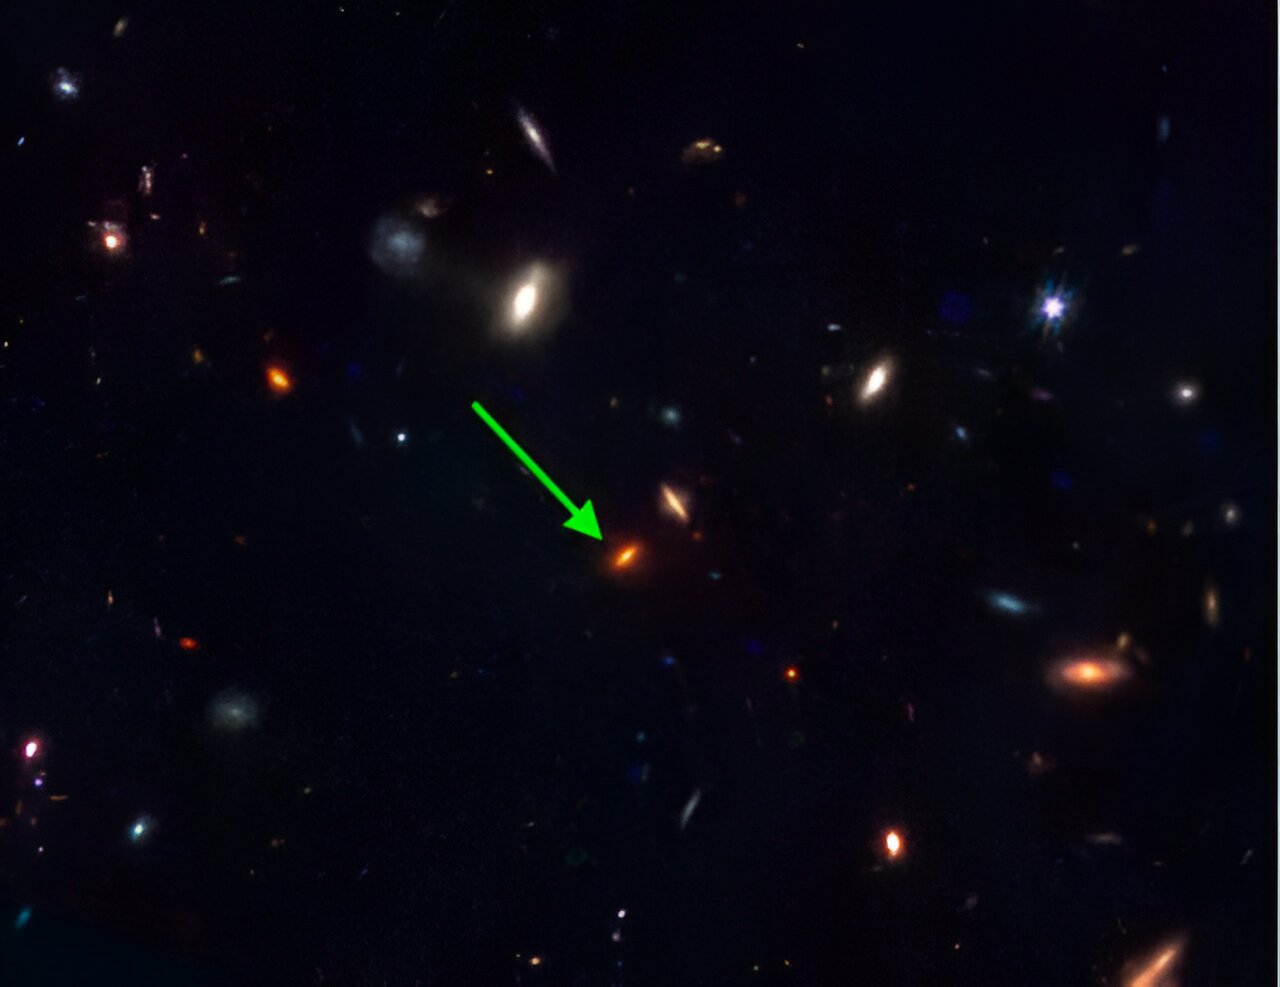 JWST-7329: Jedinstvena masivna galaksija nastala u ranim fazama svemira. Snimka NIRCAM instrumenta na svemirskom teleskopu James Webb otkriva galaksiju sa crvenim diskom, no vizualne slike same po sebi ne omogućavaju jasnu distinkciju od ostalih kosmičkih objekata. Spektroskopska analiza njezine svjetlosti pomoću JWST-a razotkrila je njezinu iznimnu karakteristiku – formirala se prije približno 13 milijardi godina, iako posjeduje otprilike četiri puta veću masu zvijezda nego što je to slučaj s Mliječnom Stazom danas. Autorstvo: Svemirski teleskop James Webb